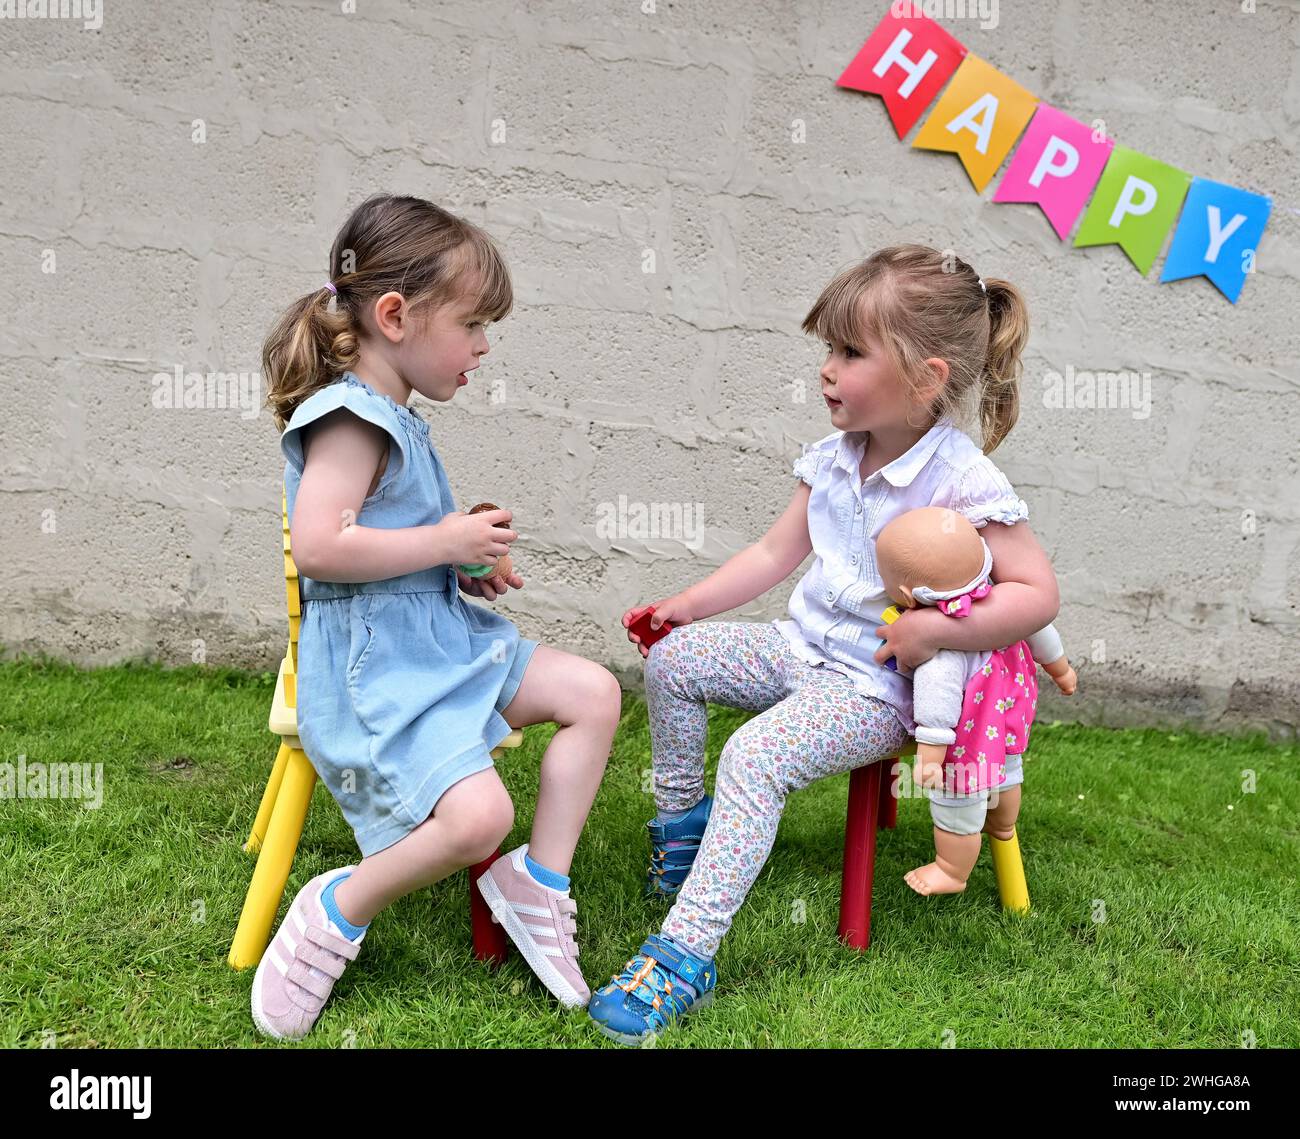 Zwei 3-jährige Kinder sprechen (Mädchen), während sie auf Stühlen auf Gras in einem Garten sitzen, von Angesicht zu Angesicht mit dem Wort HAPPY auf einer weißen Wand dahinter. Stockfoto